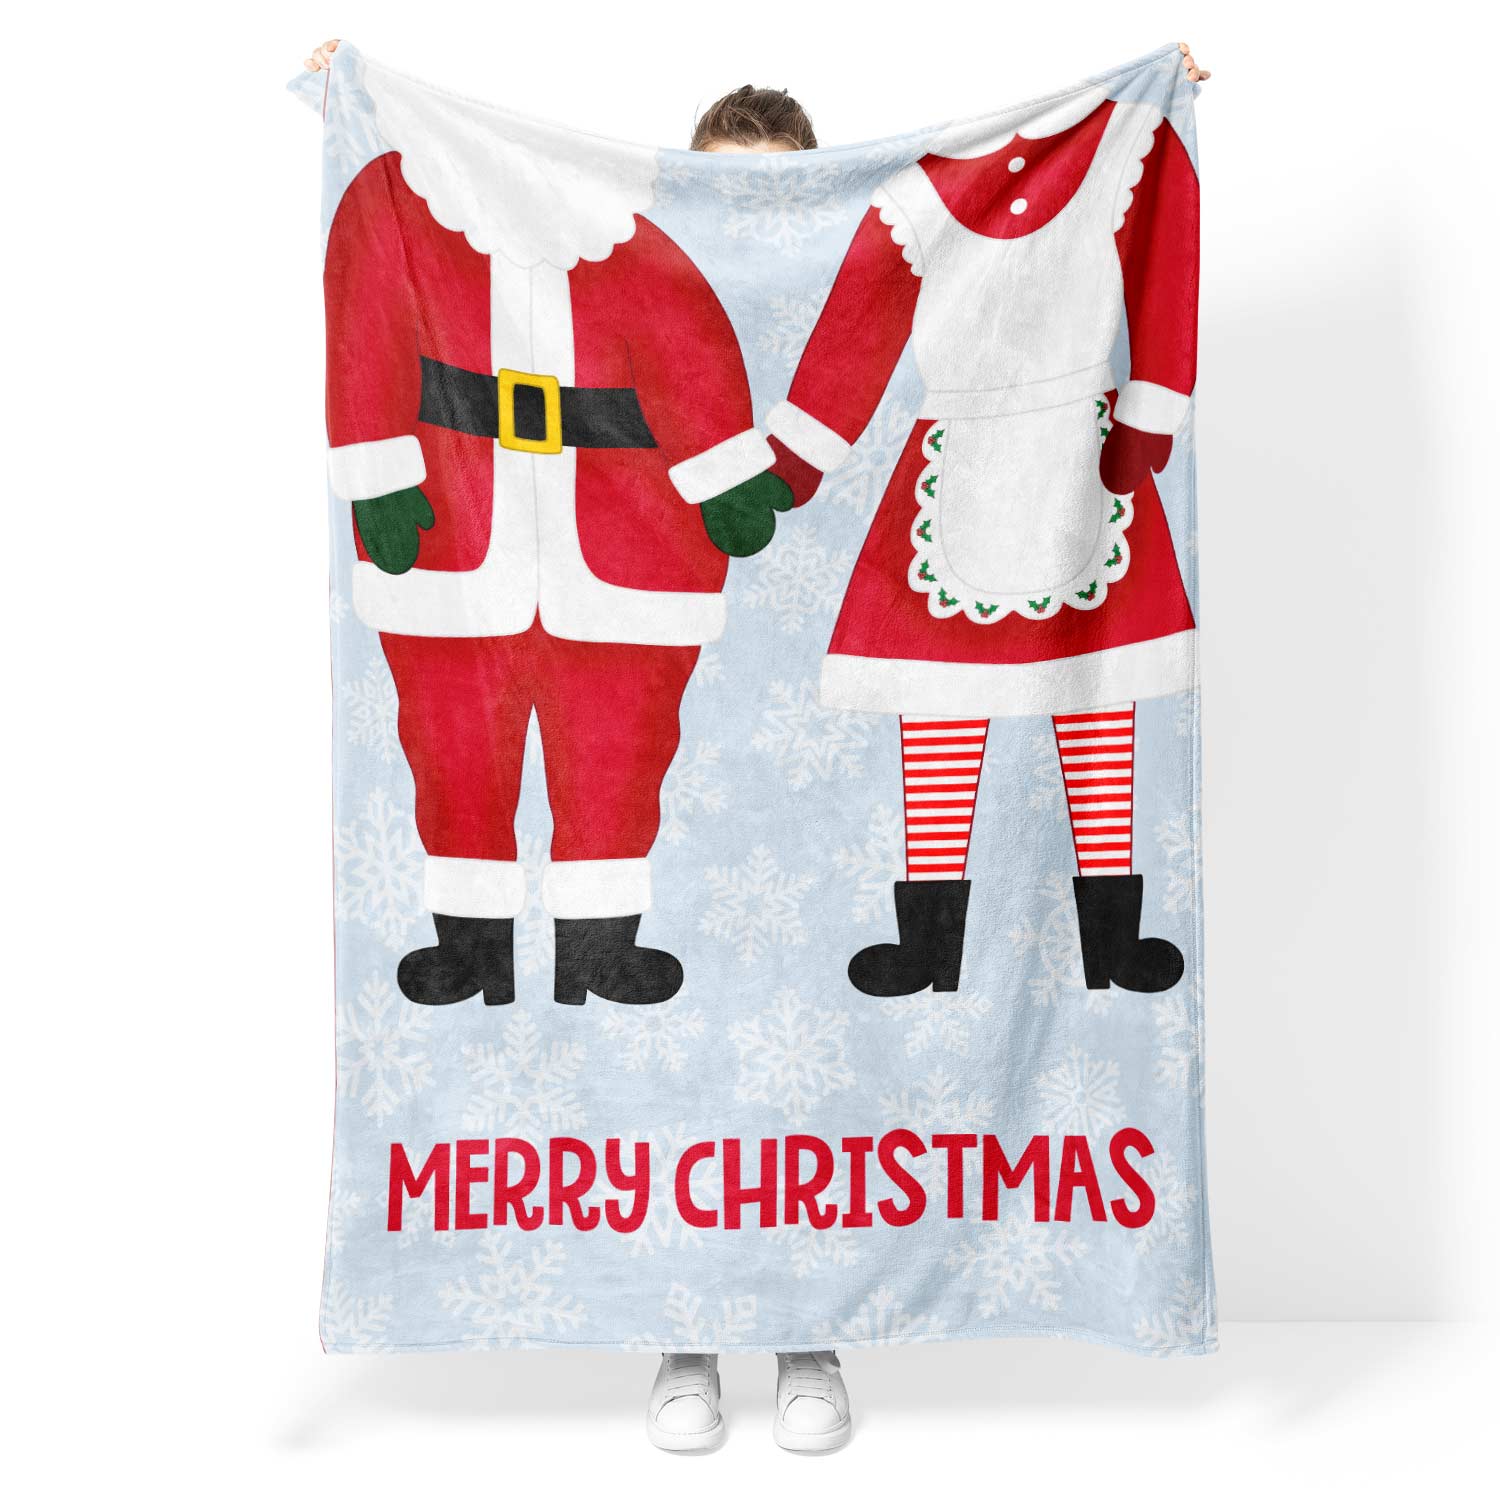 Mr & Mrs Claus Personalised Blanket